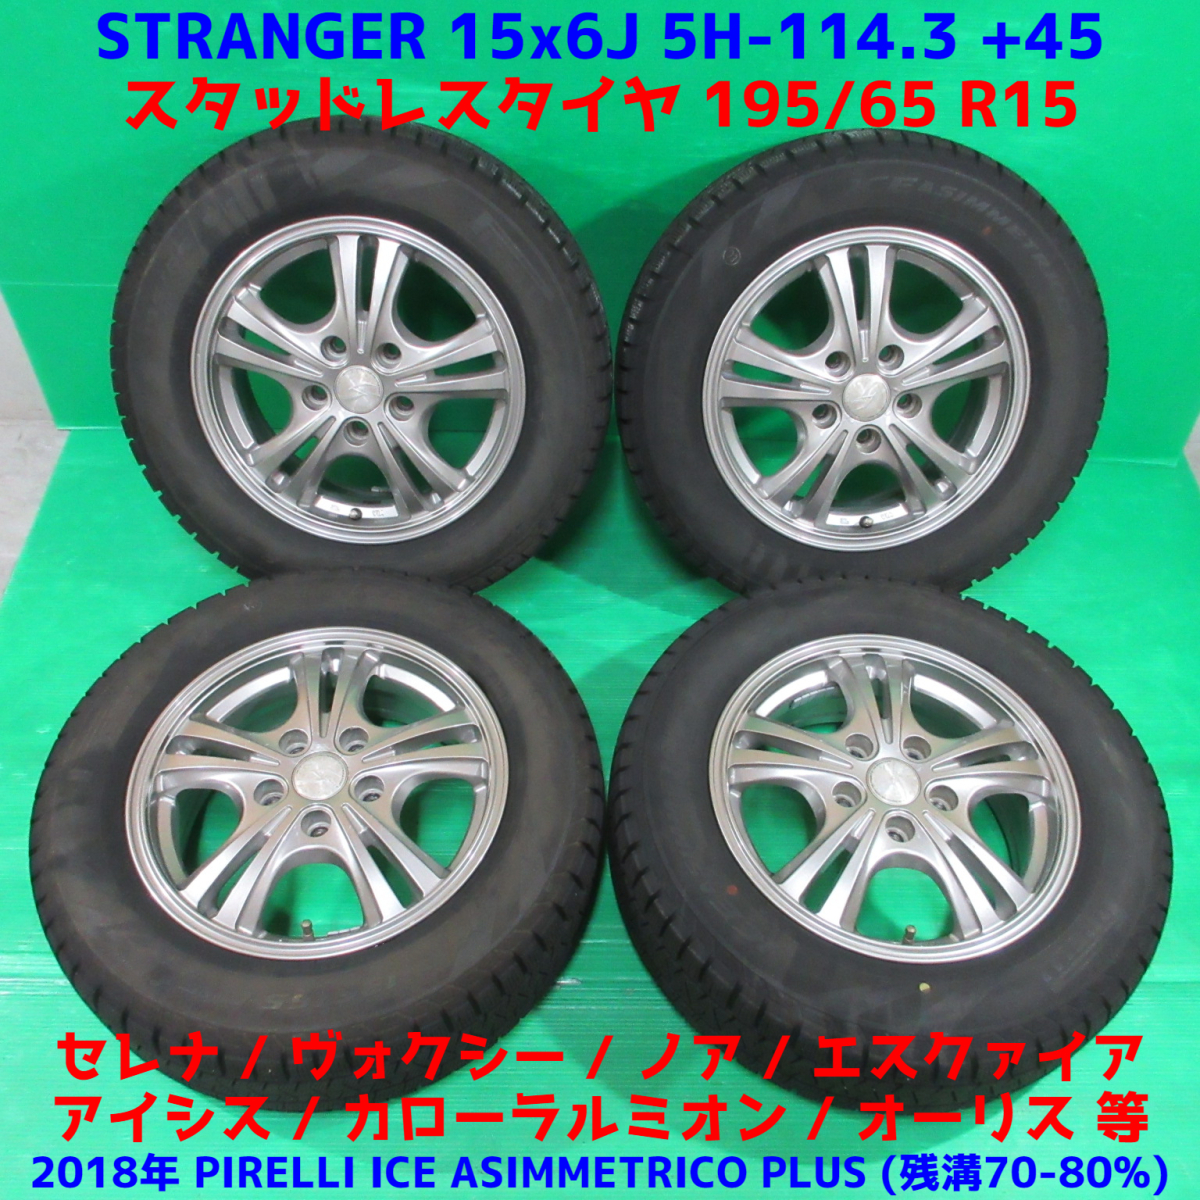 割引 STARANGER 2020年製スタッドレスタイヤ付き 195 65r15 ienomat.com.br